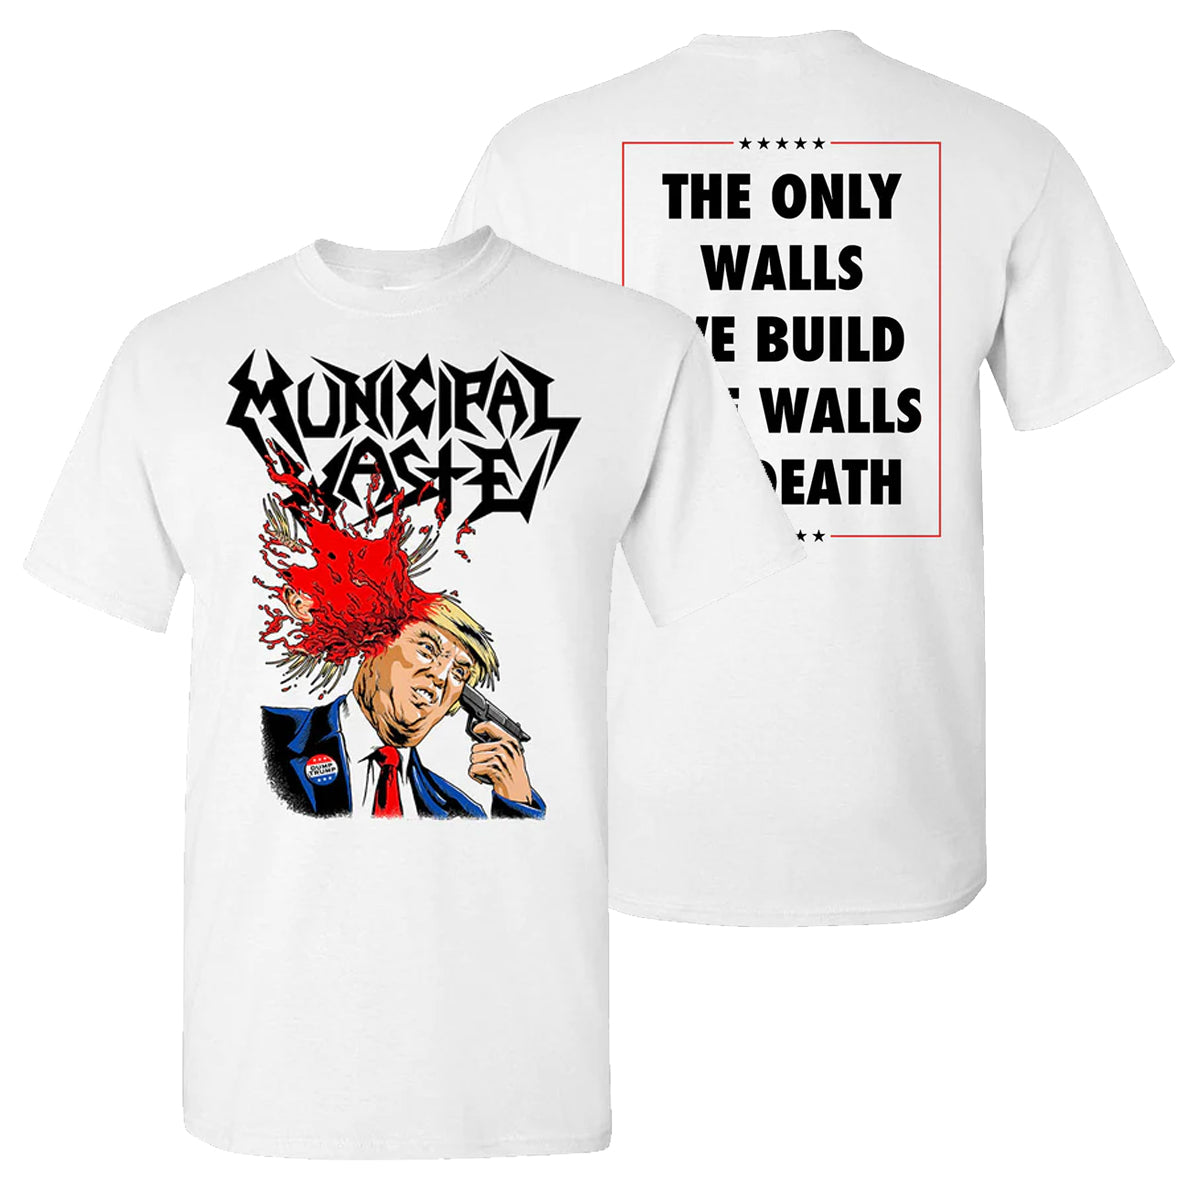 Walls of Death T-Shirt